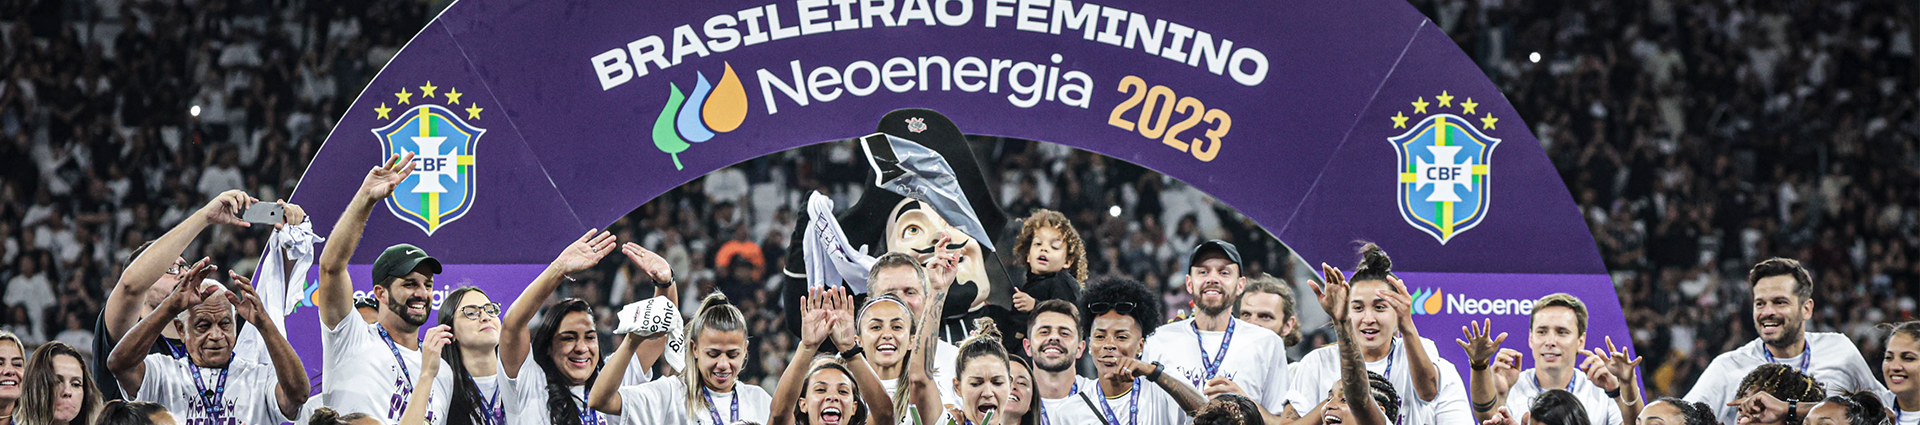 Imagem mostra celebração do time feminino do Corinthinas após final do Brasileirão Feminino Neoenergia 2023